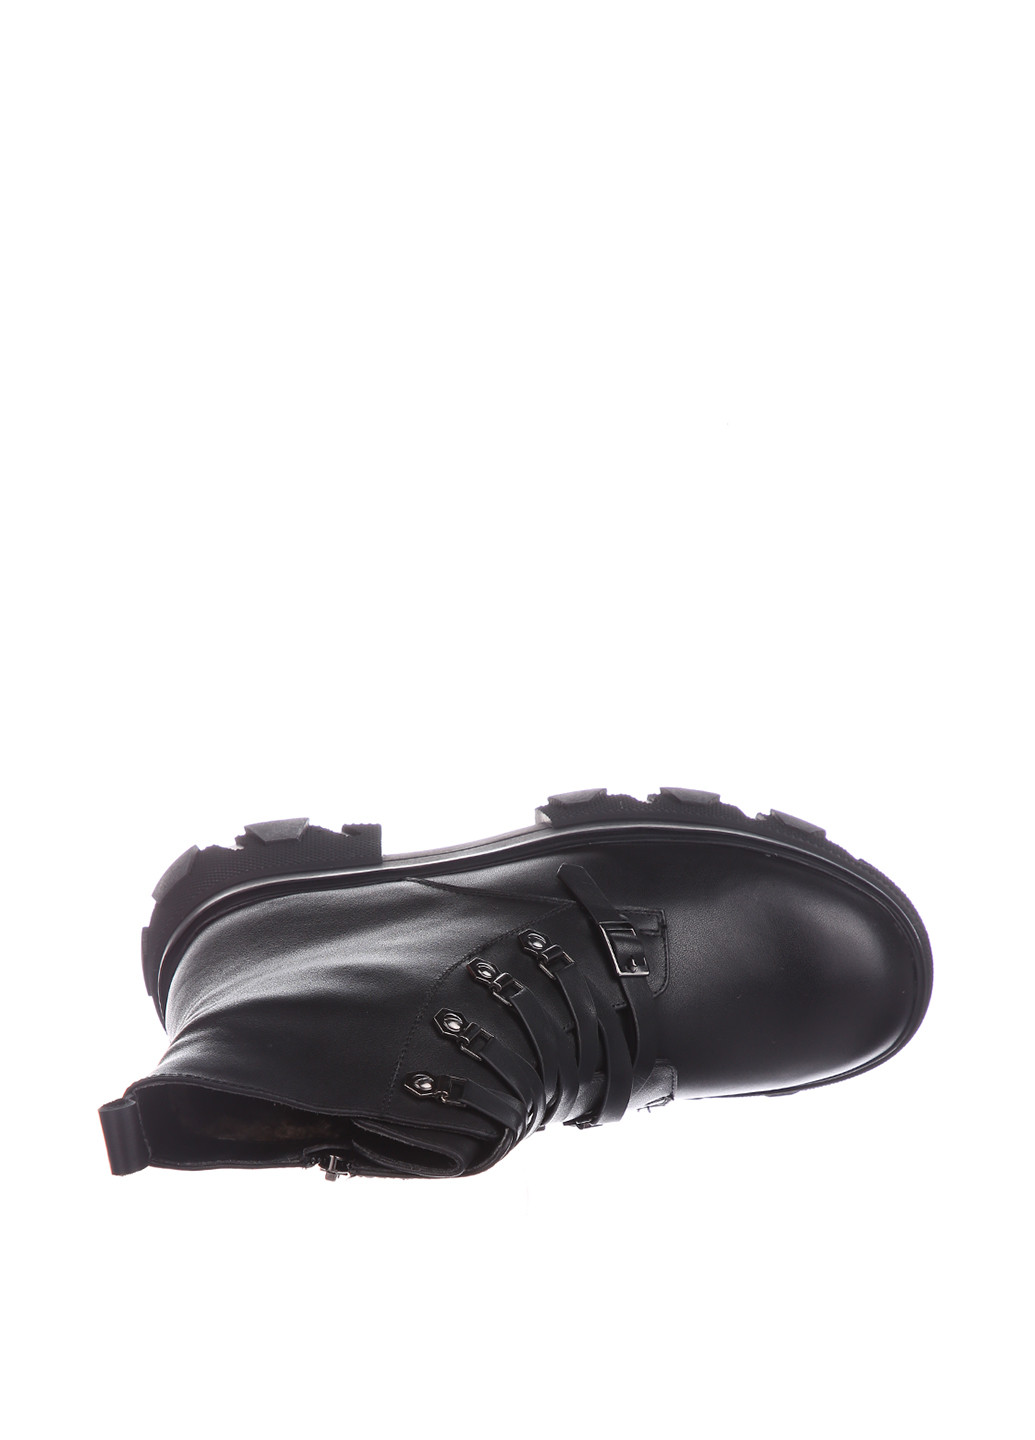 Зимние ботинки Blizzarini со шнуровкой, на тракторной подошве, с пряжкой